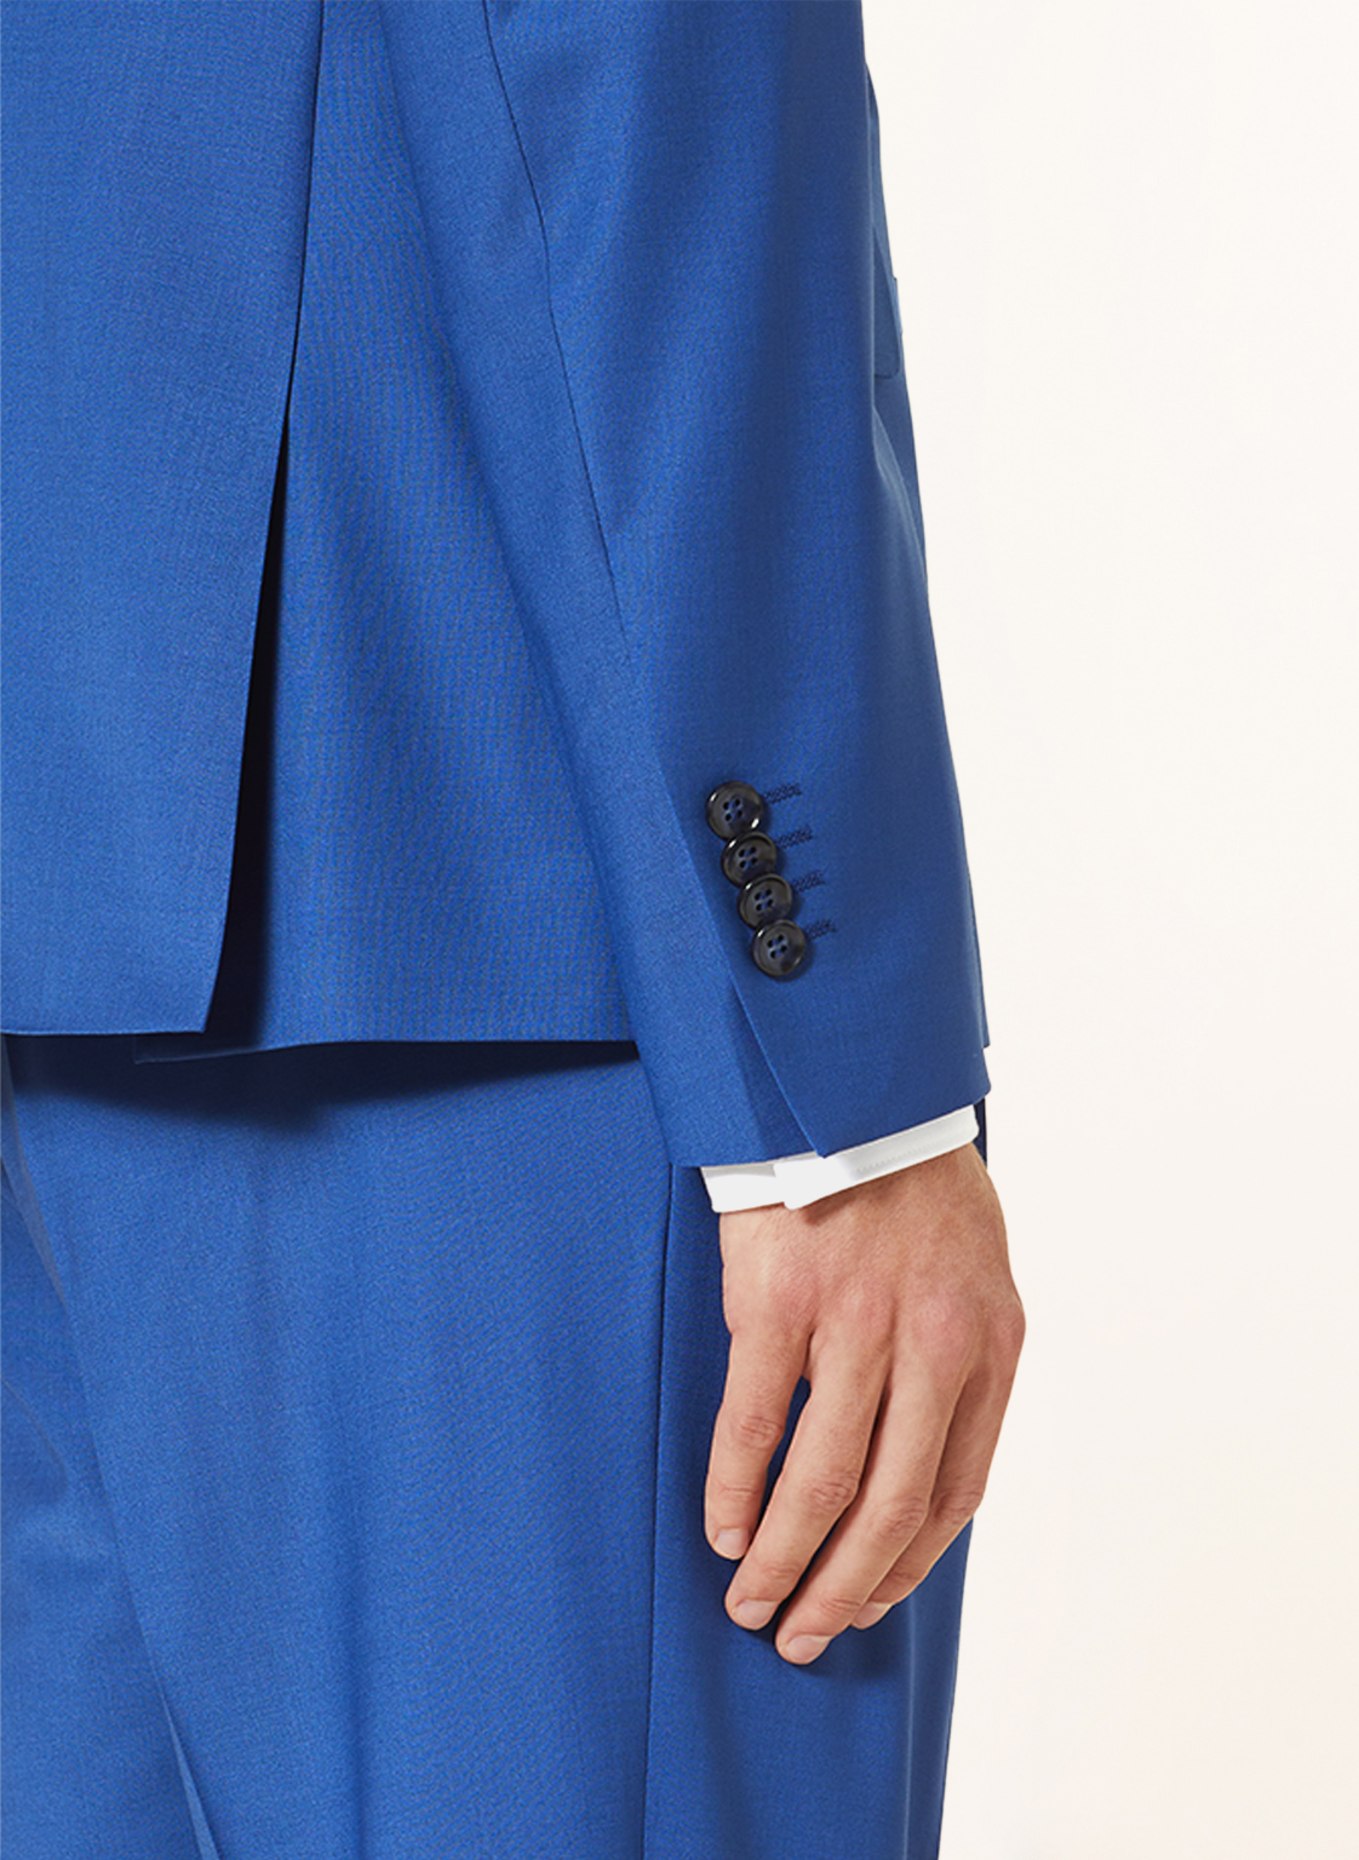 CINQUE Suit jacket CITWINGO regular fit, Color: 661 (Image 6)